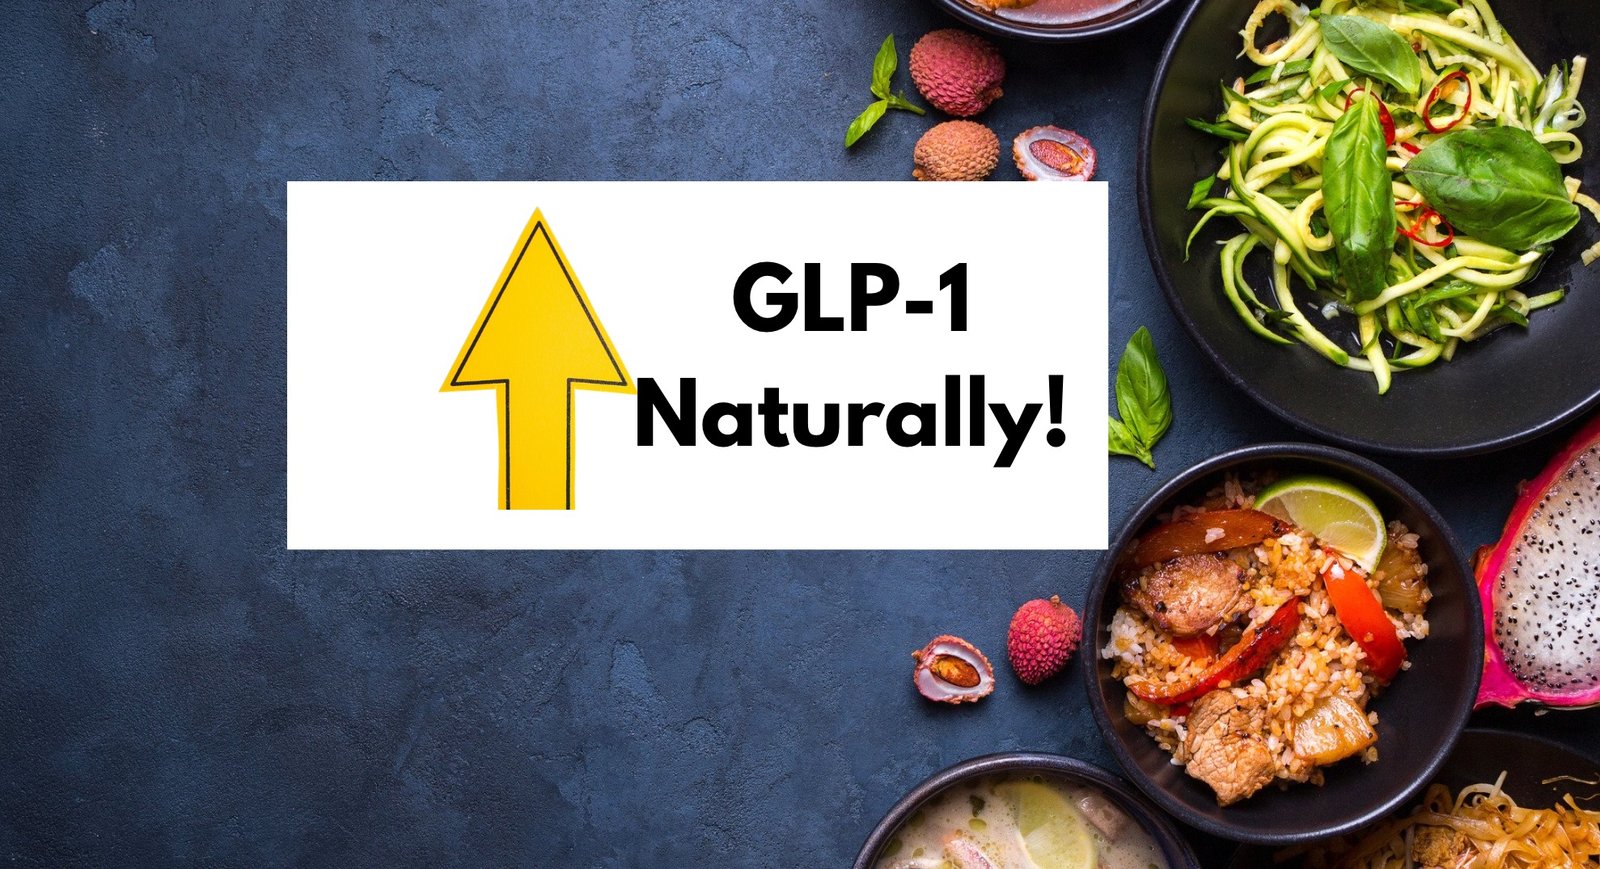 GLP-1 foods